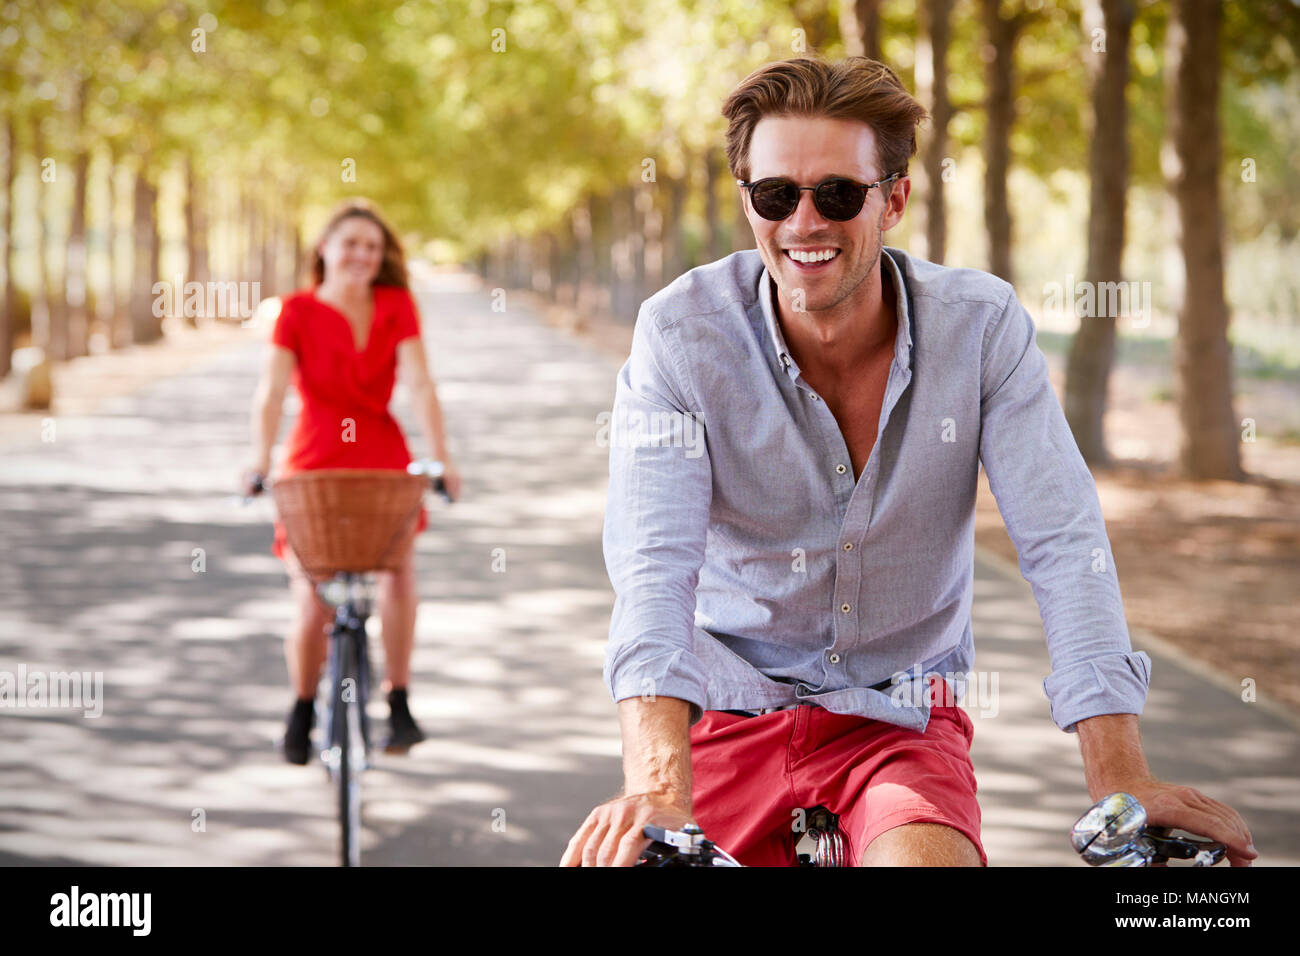 Les jeunes adultes blanc couple riding bikes sur une calme route ensoleillée Banque D'Images